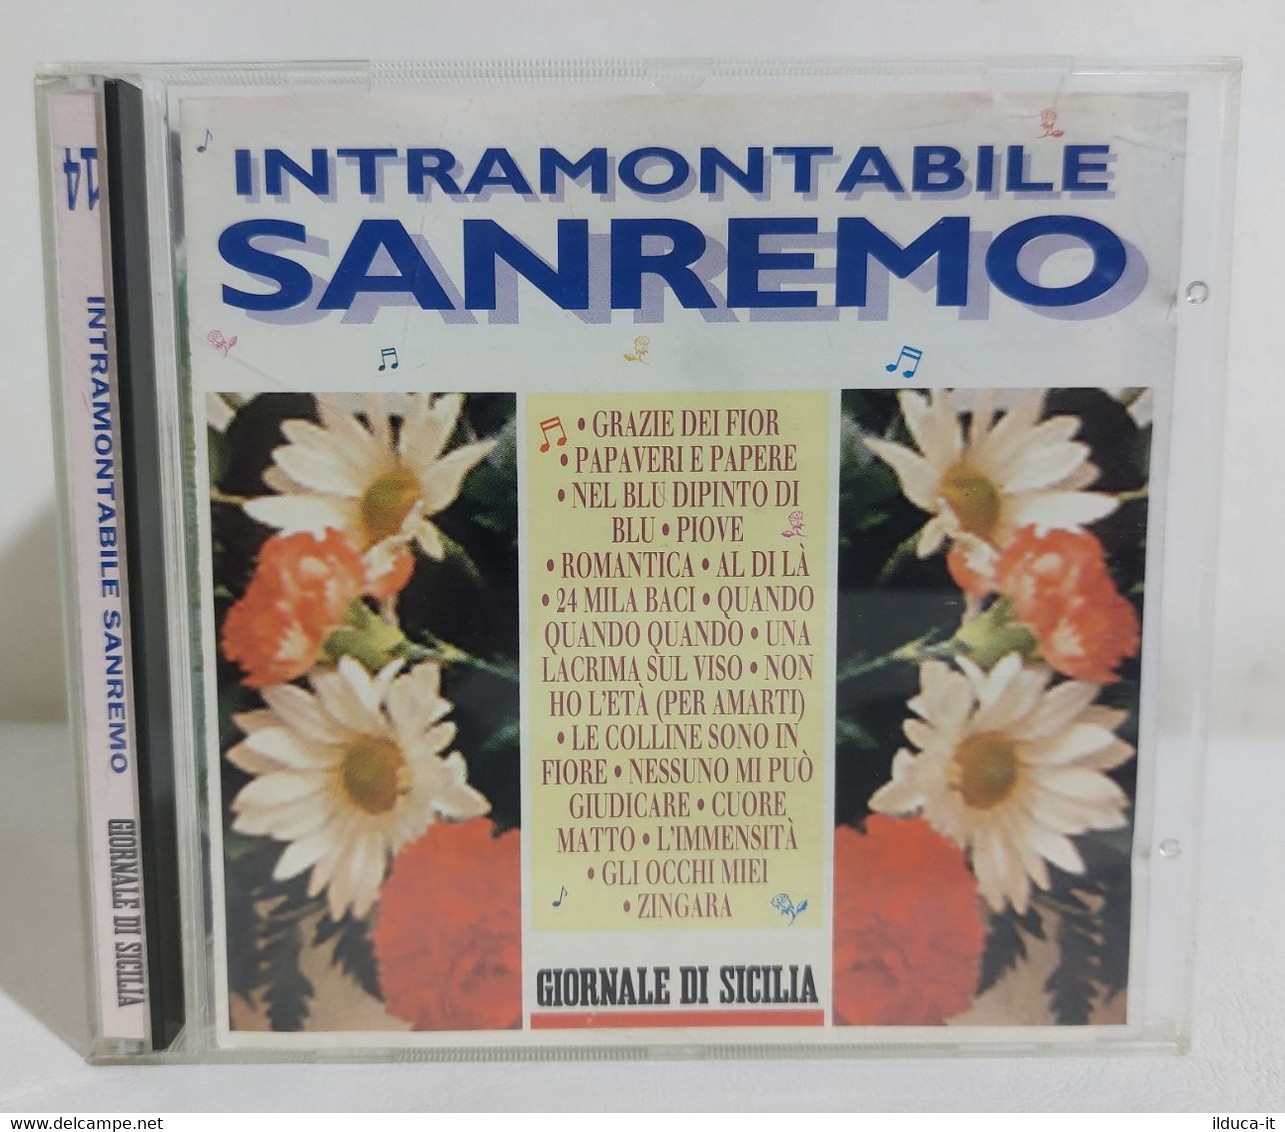 I110397 CD - Intramontabile Sanremo (Nilla Pizzi Modugno Dallara Goich...) - Compilations